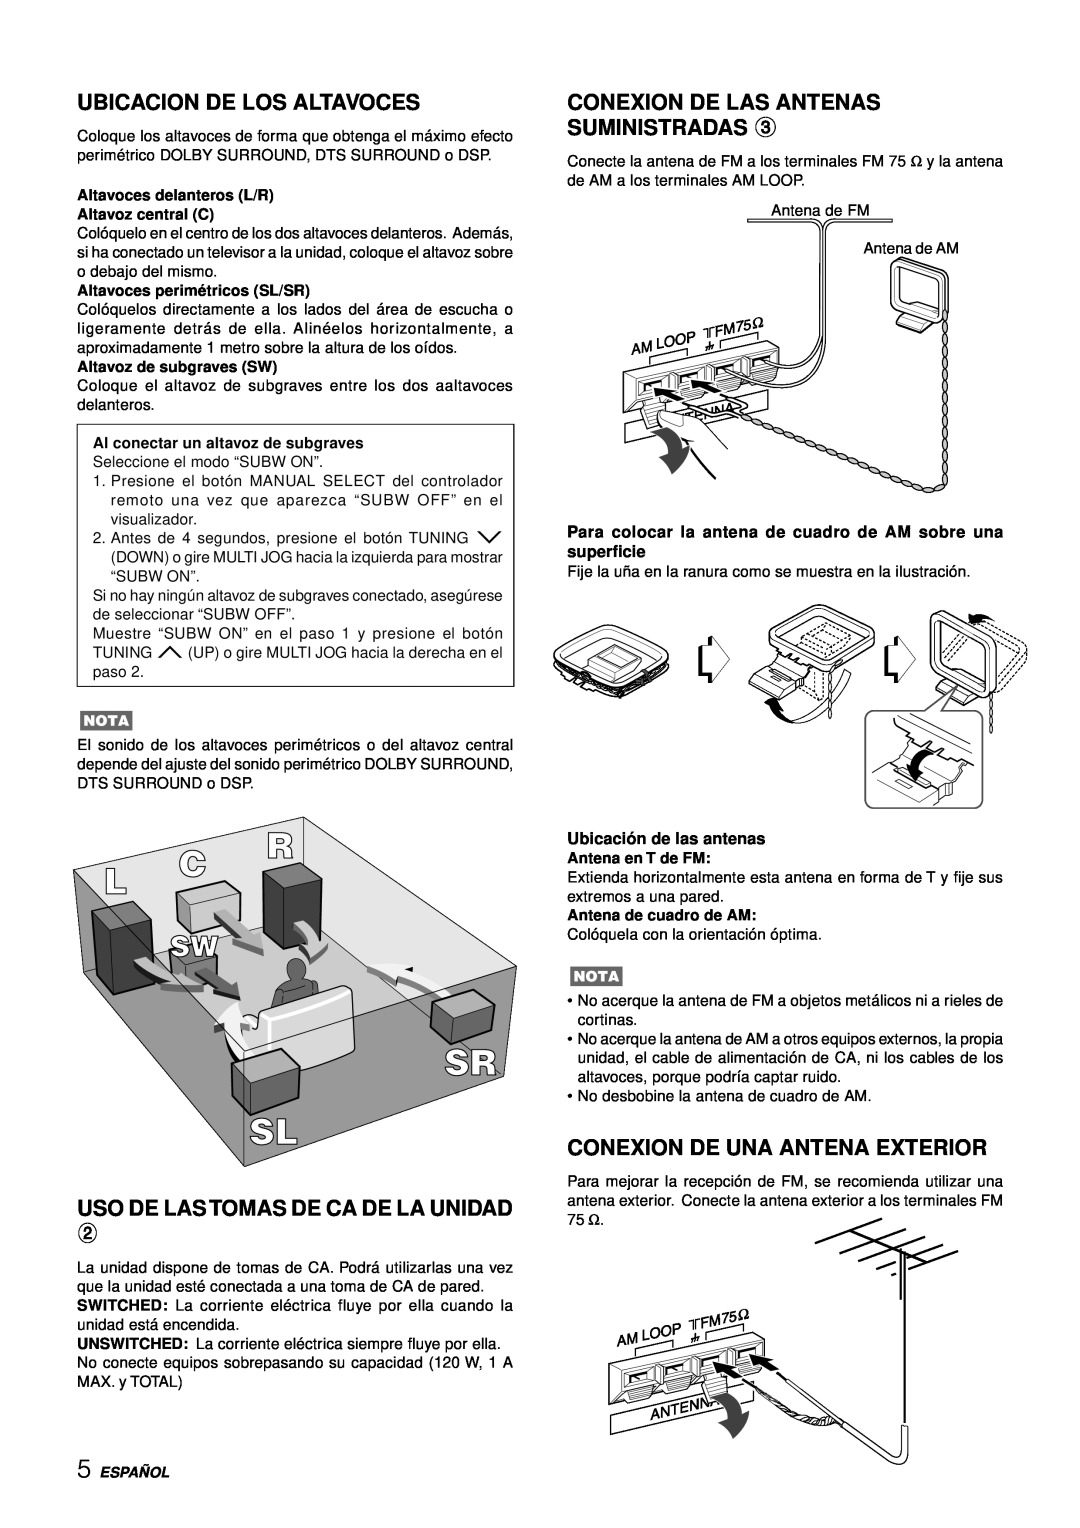 Aiwa AV-D97 manual Ubicacion De Los Altavoces, Uso De Las Tomas De Ca De La Unidad, Conexion De Las Antenas Suministradas 